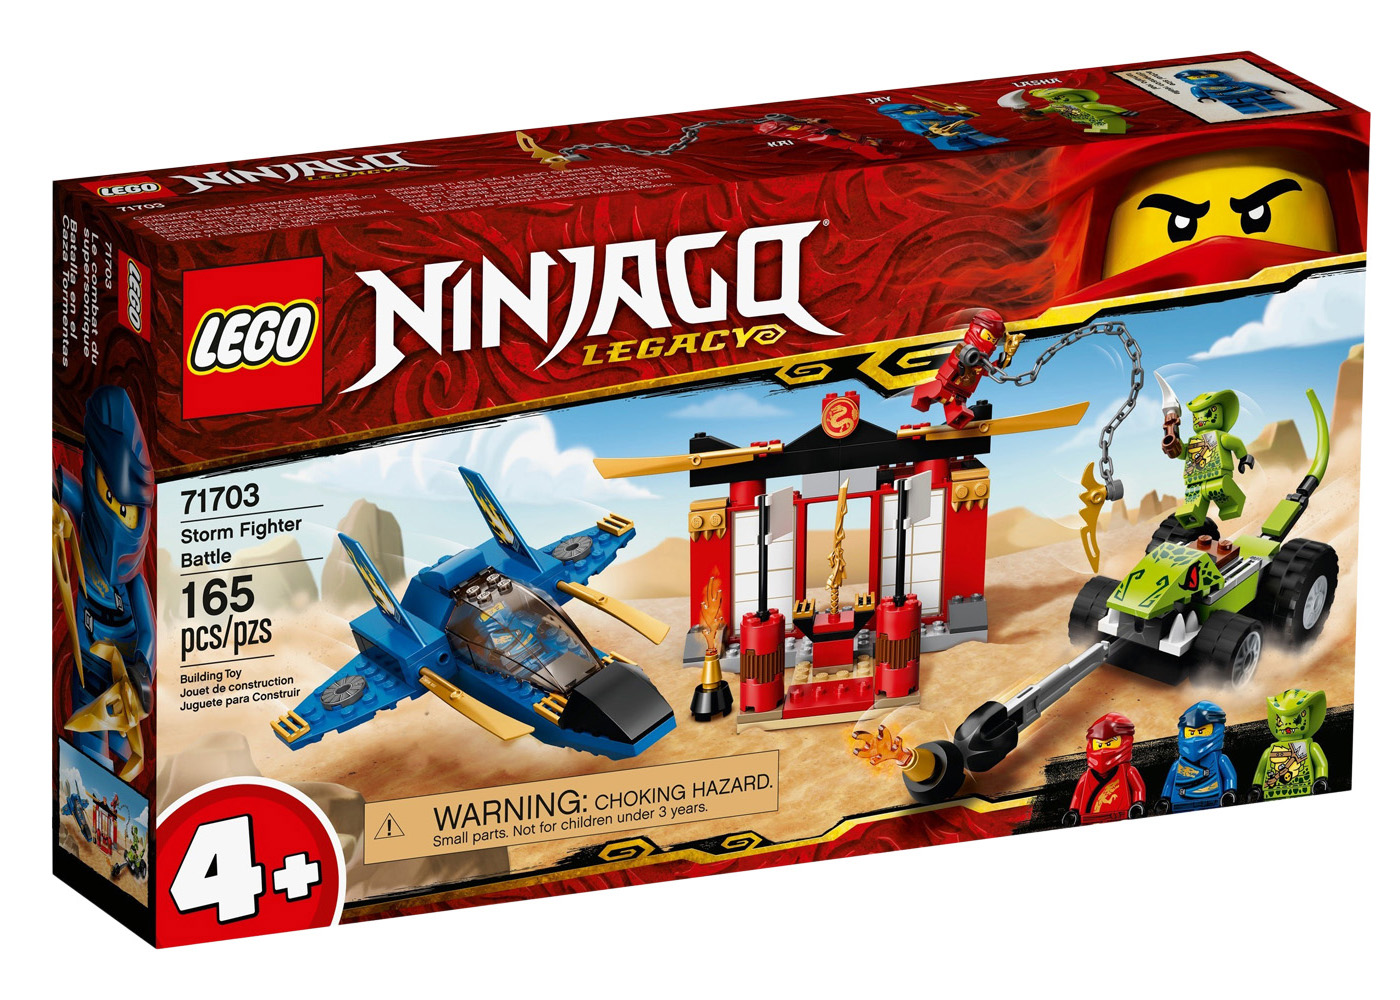 LEGO Ninjago Titan Mech Battle Set 70737 - US